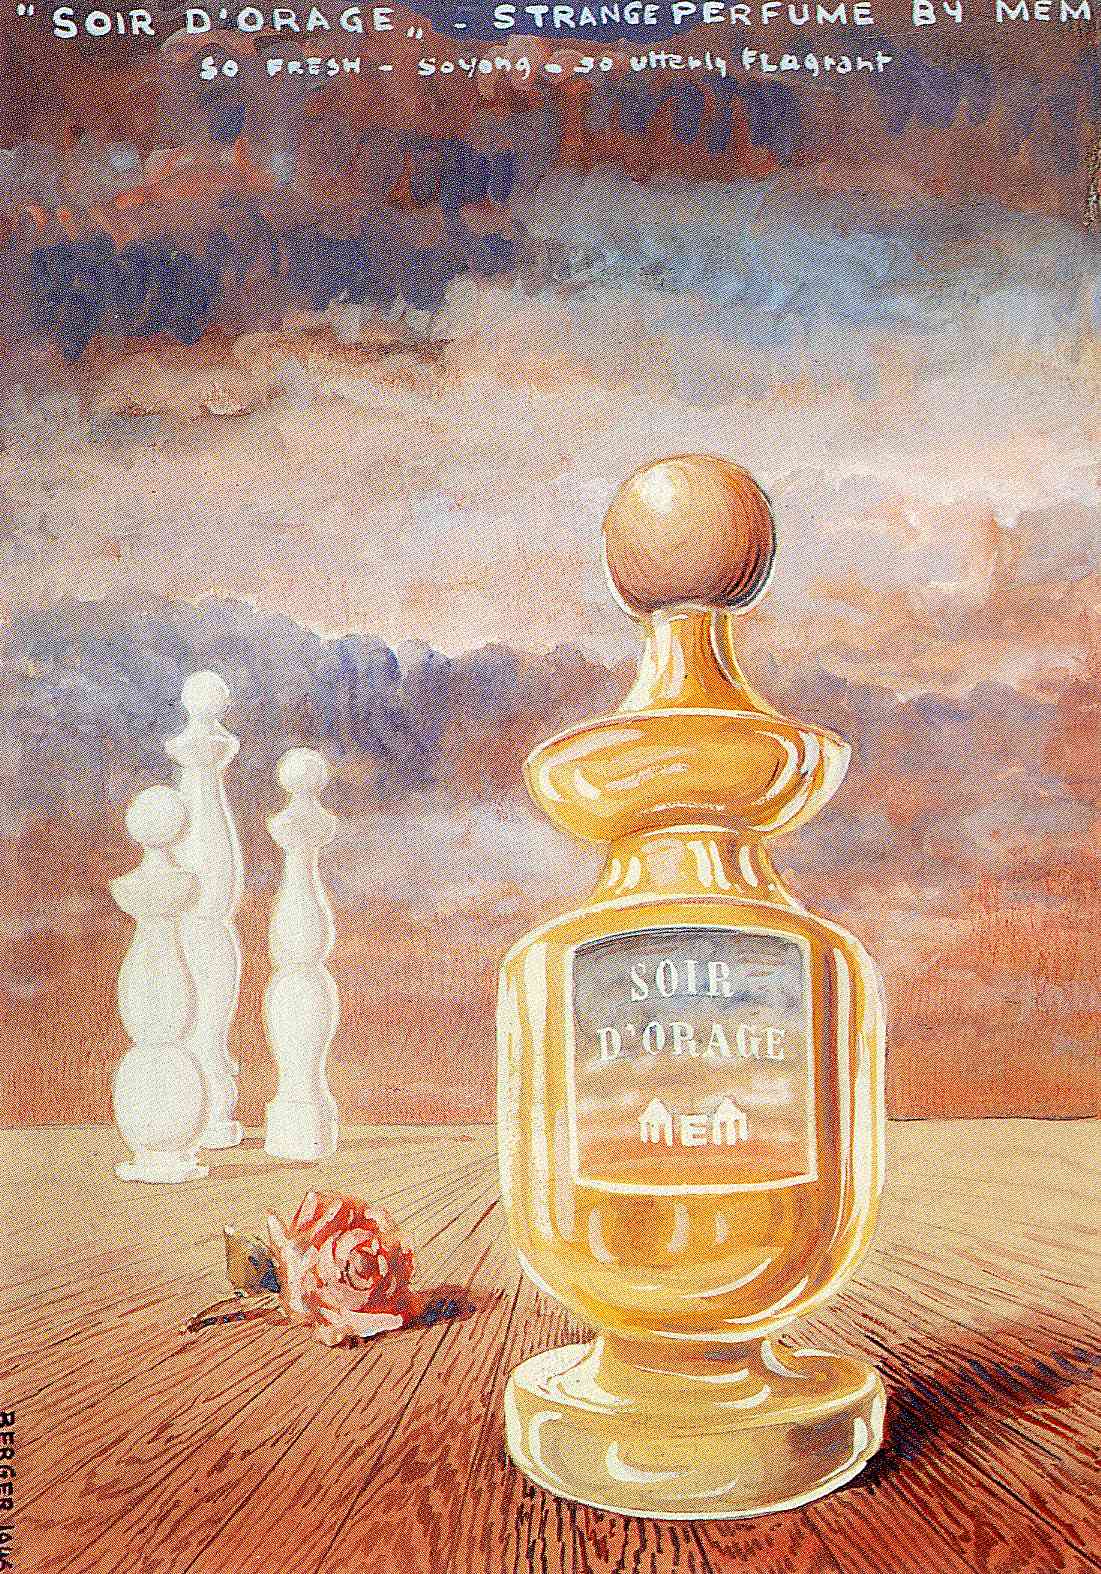 Soir d'orage, strange perfume by mem (1946).